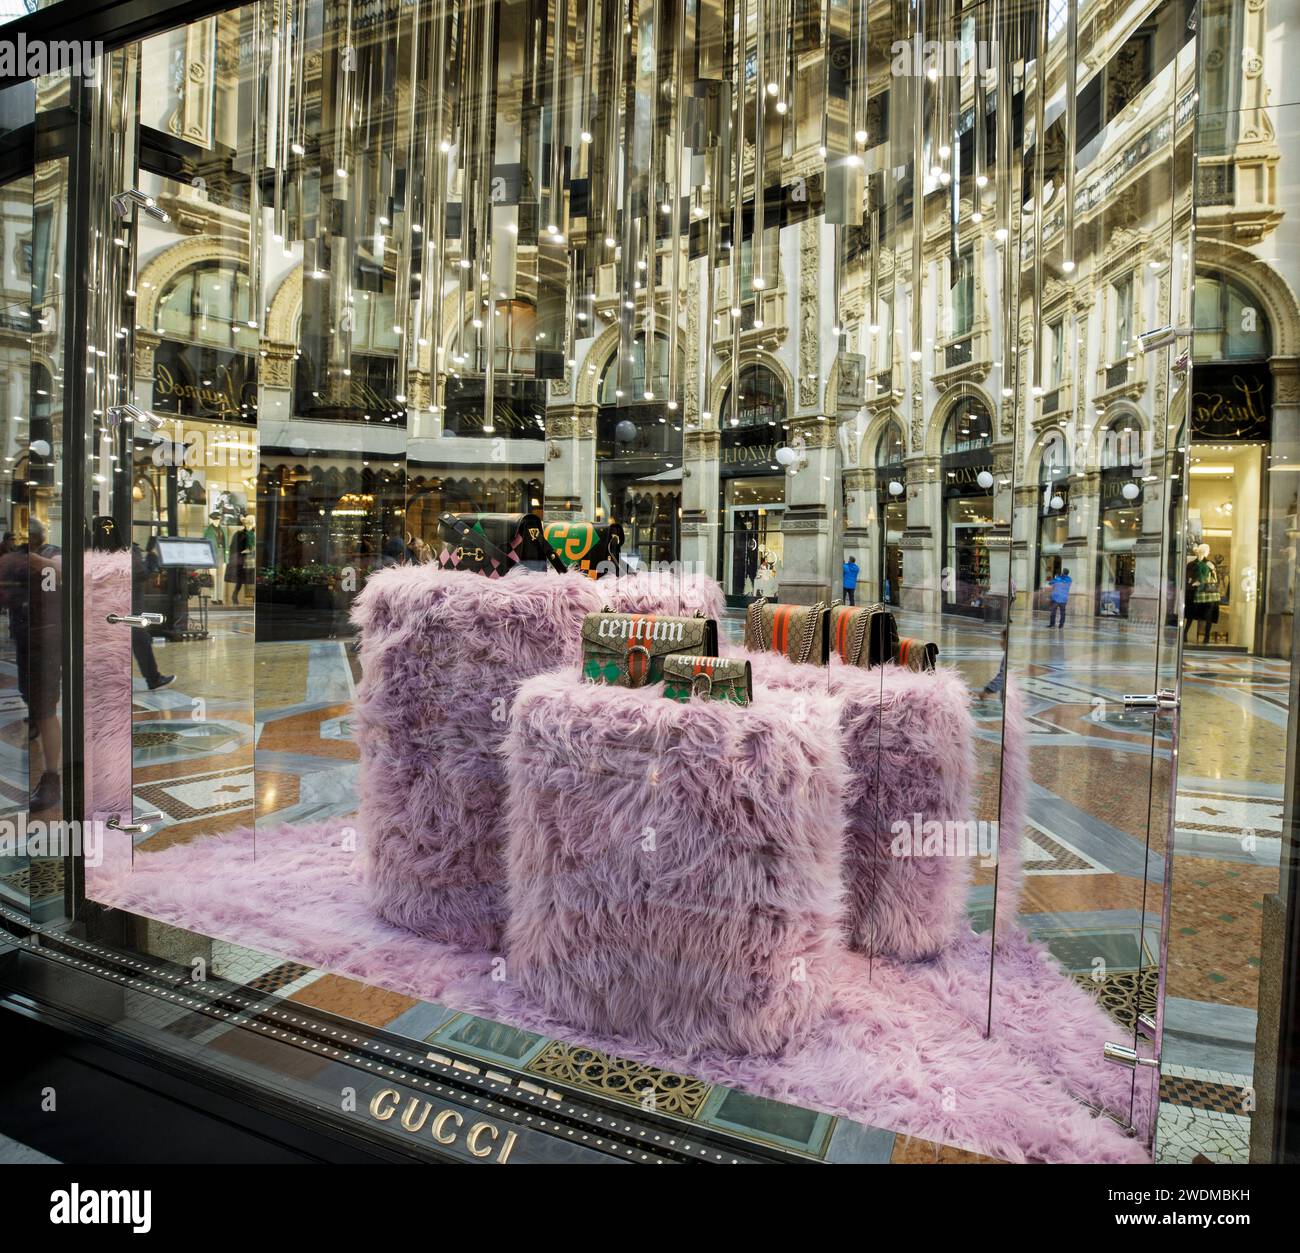 Vetrina per il negozio Gucci nella galleria di negozi di lusso di Milano Vittorio Emanuele II, con cubi, specchi e borse viola morbidi. Foto Stock